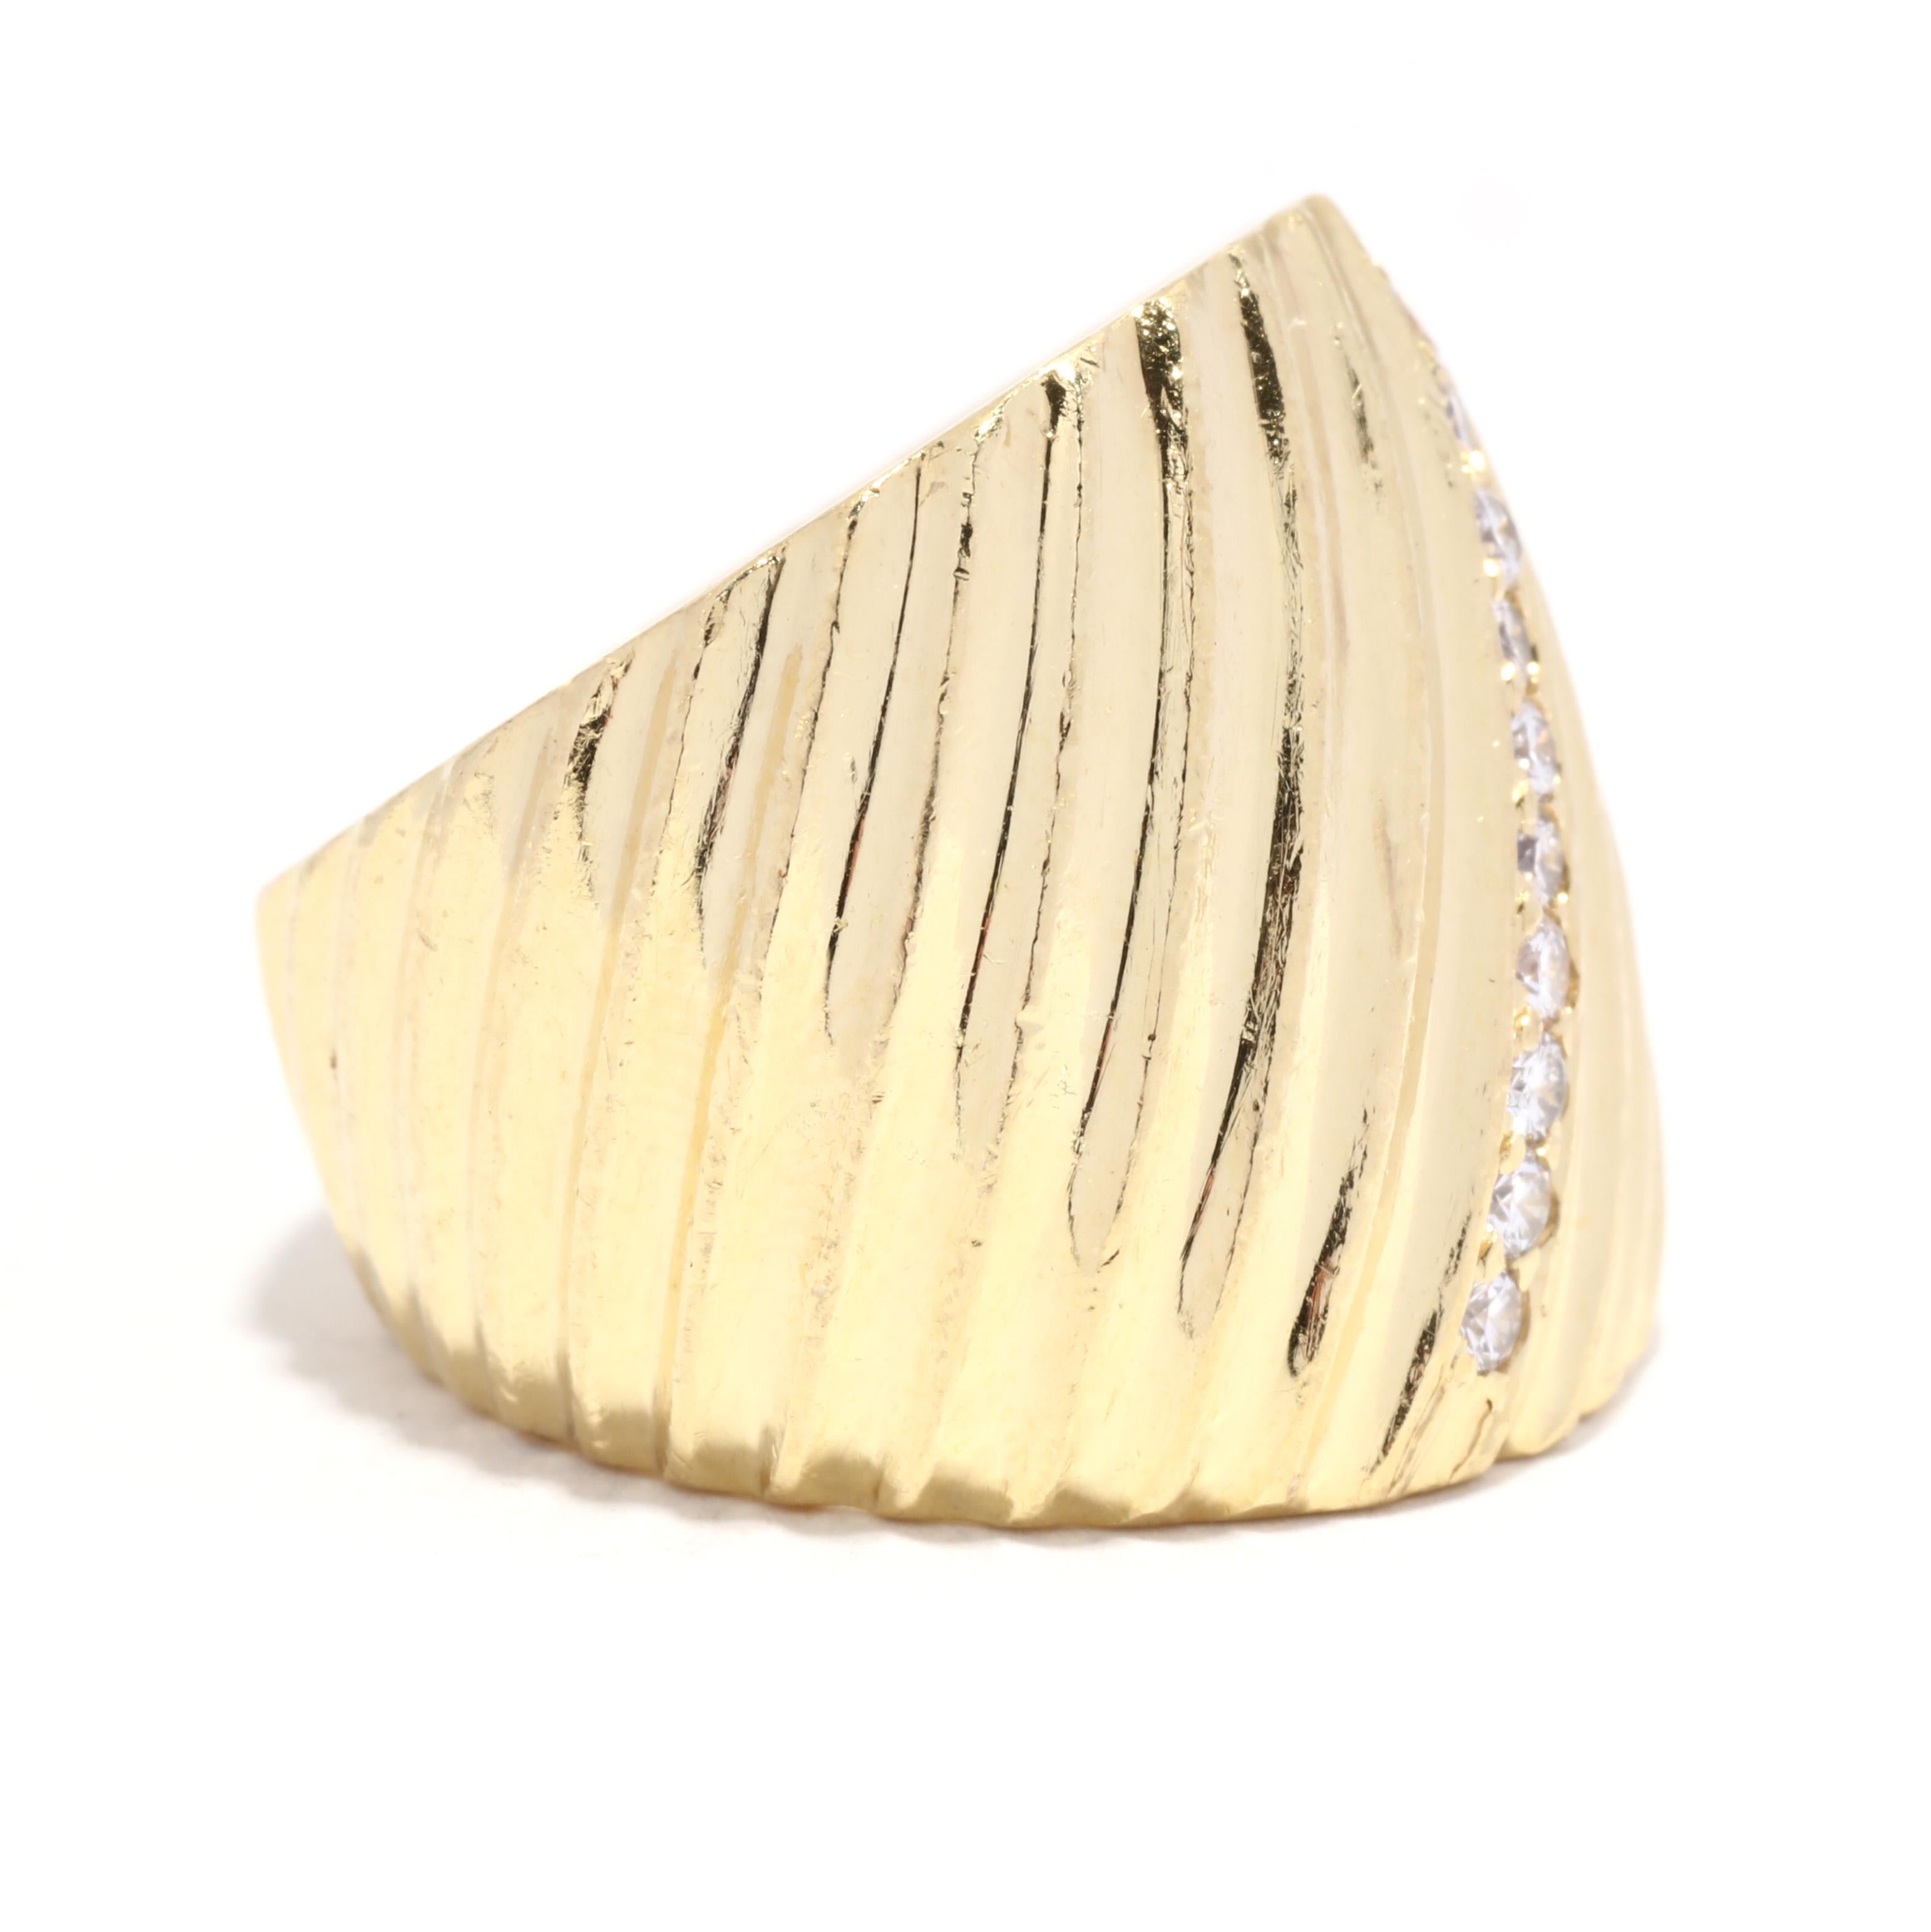 Ein Vintage 18 Karat Gelbgold schweren breiten Diamant gerippt Ring. Dieser Ring aus massivem Gold hat ein breites, konisch zulaufendes Design mit einem diagonalen, geriffelten Motiv, das mit einer Reihe runder Diamanten im Brillantschliff mit einem